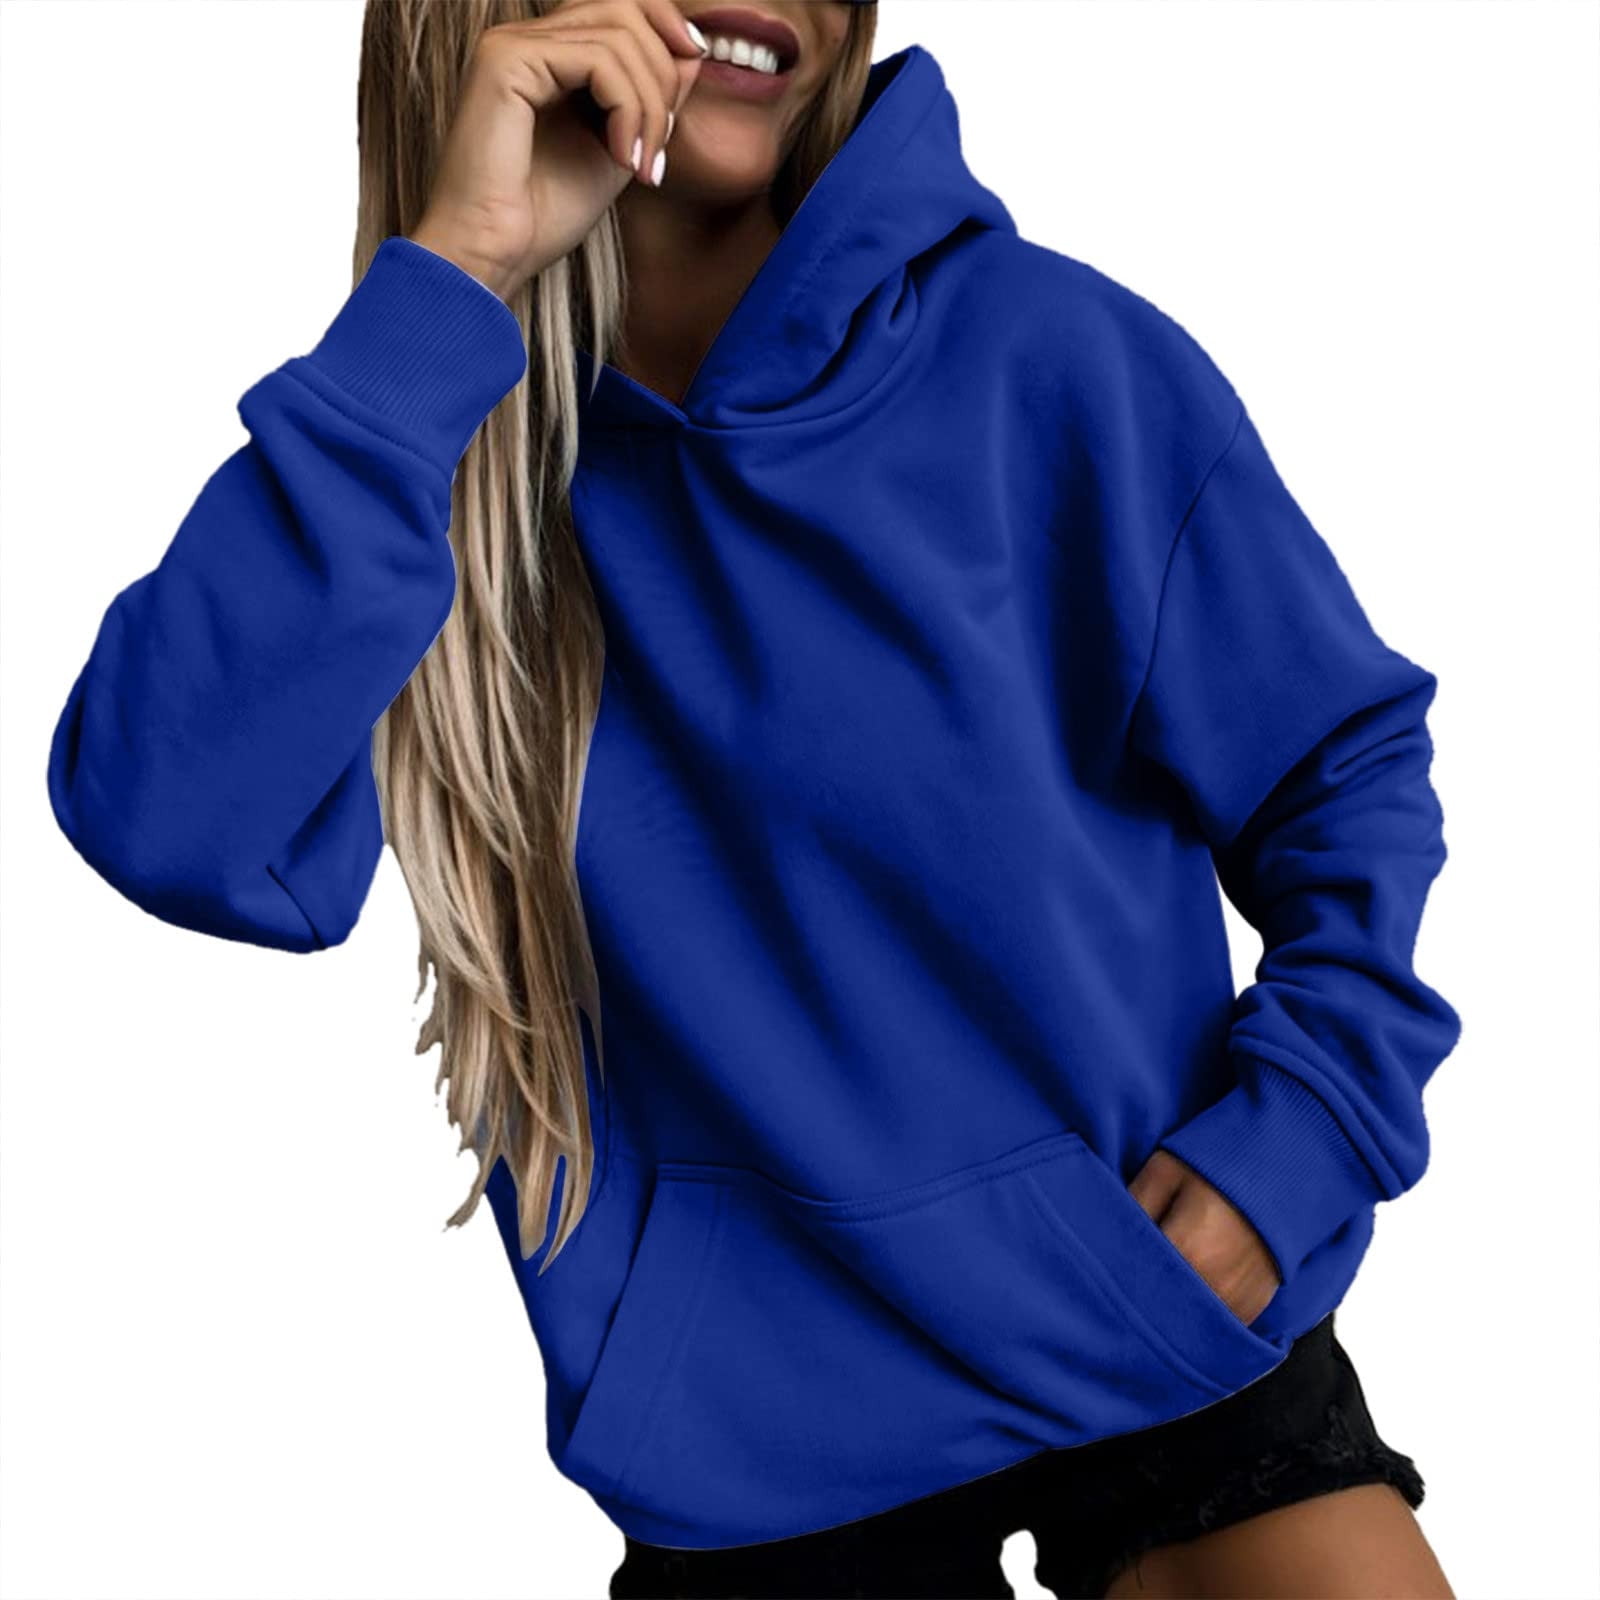 Scyoekwg Sweatshirt for Women Trendy Classic Solid Colors Long Sleeve  Essentials Hoodie Pullover Tops Hooded Neck Pullover Sweatshirt Casual Hoodie  Tops Ladies Sweatshirts Blue XL 